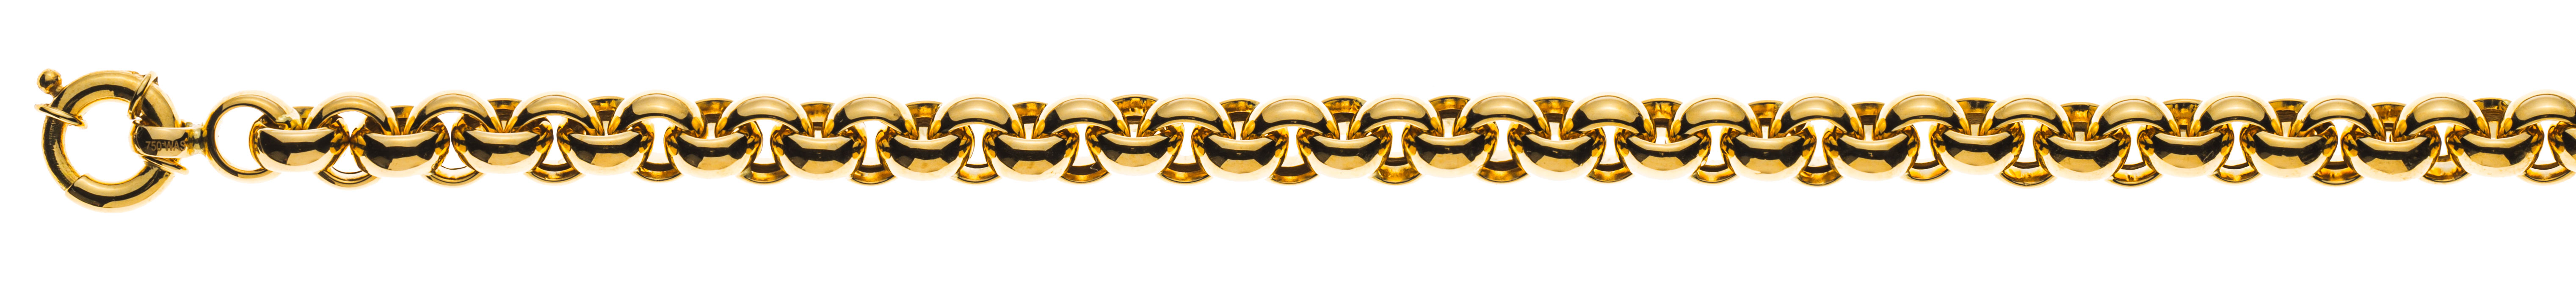 AURONOS Prestige Necklace yellow gold 18K semi-solid pea chain 55cm 7mm